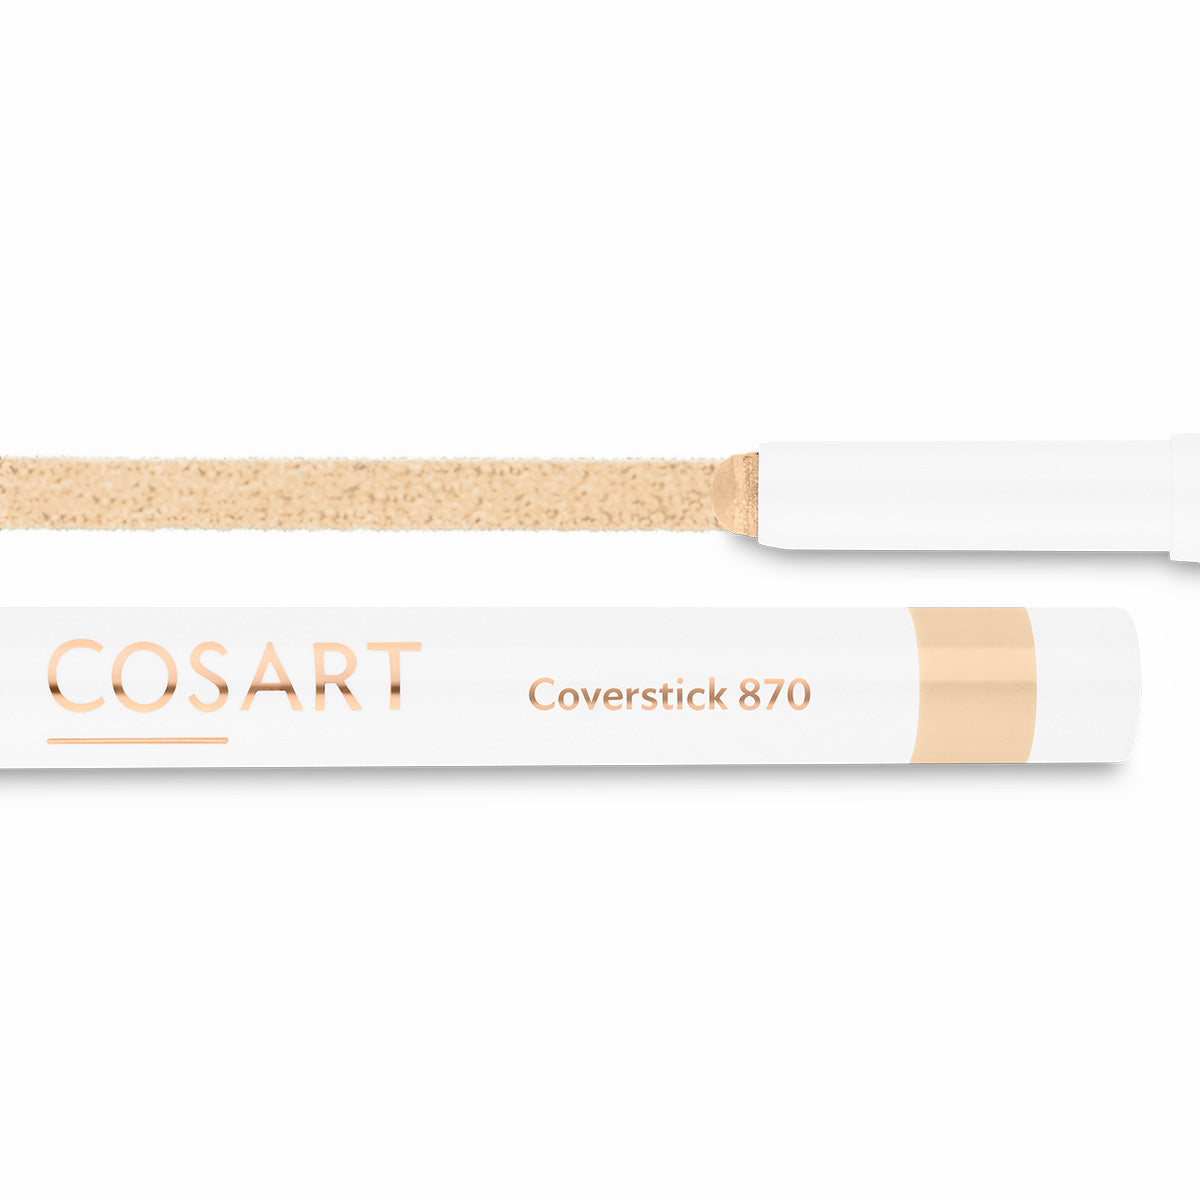 Cosart Coverstick antiseptisch